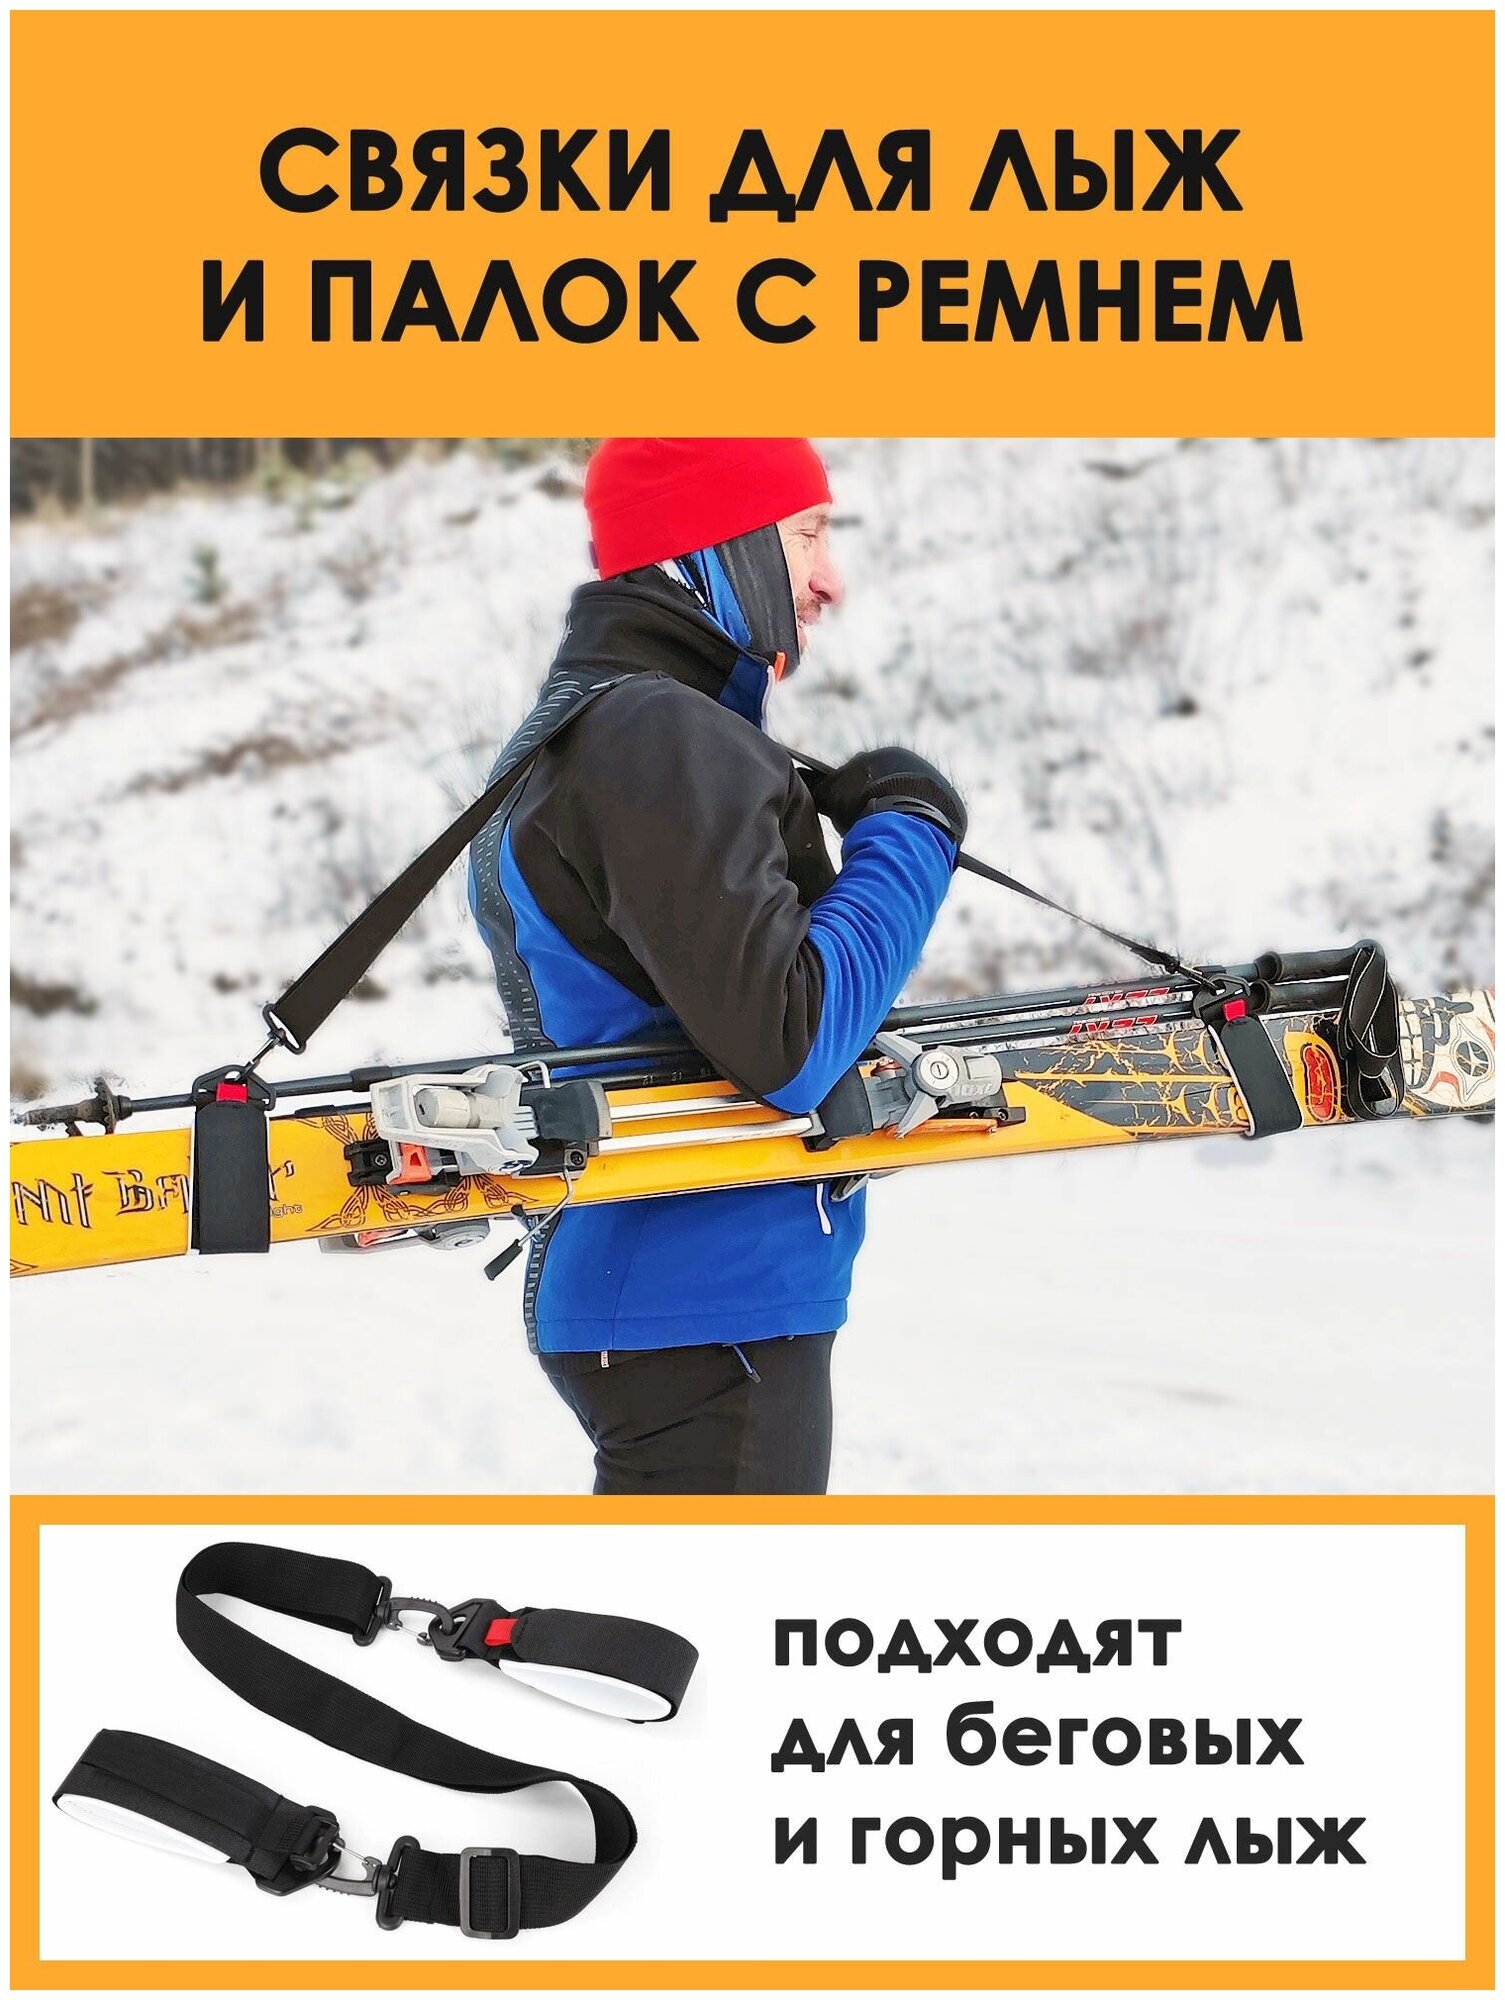 Связки для крепления беговых и горных лыж и палок, лыжный зажим на липучке, манжеты с ремнем — купить в интернет-магазине по низкой цене на Яндекс Маркете